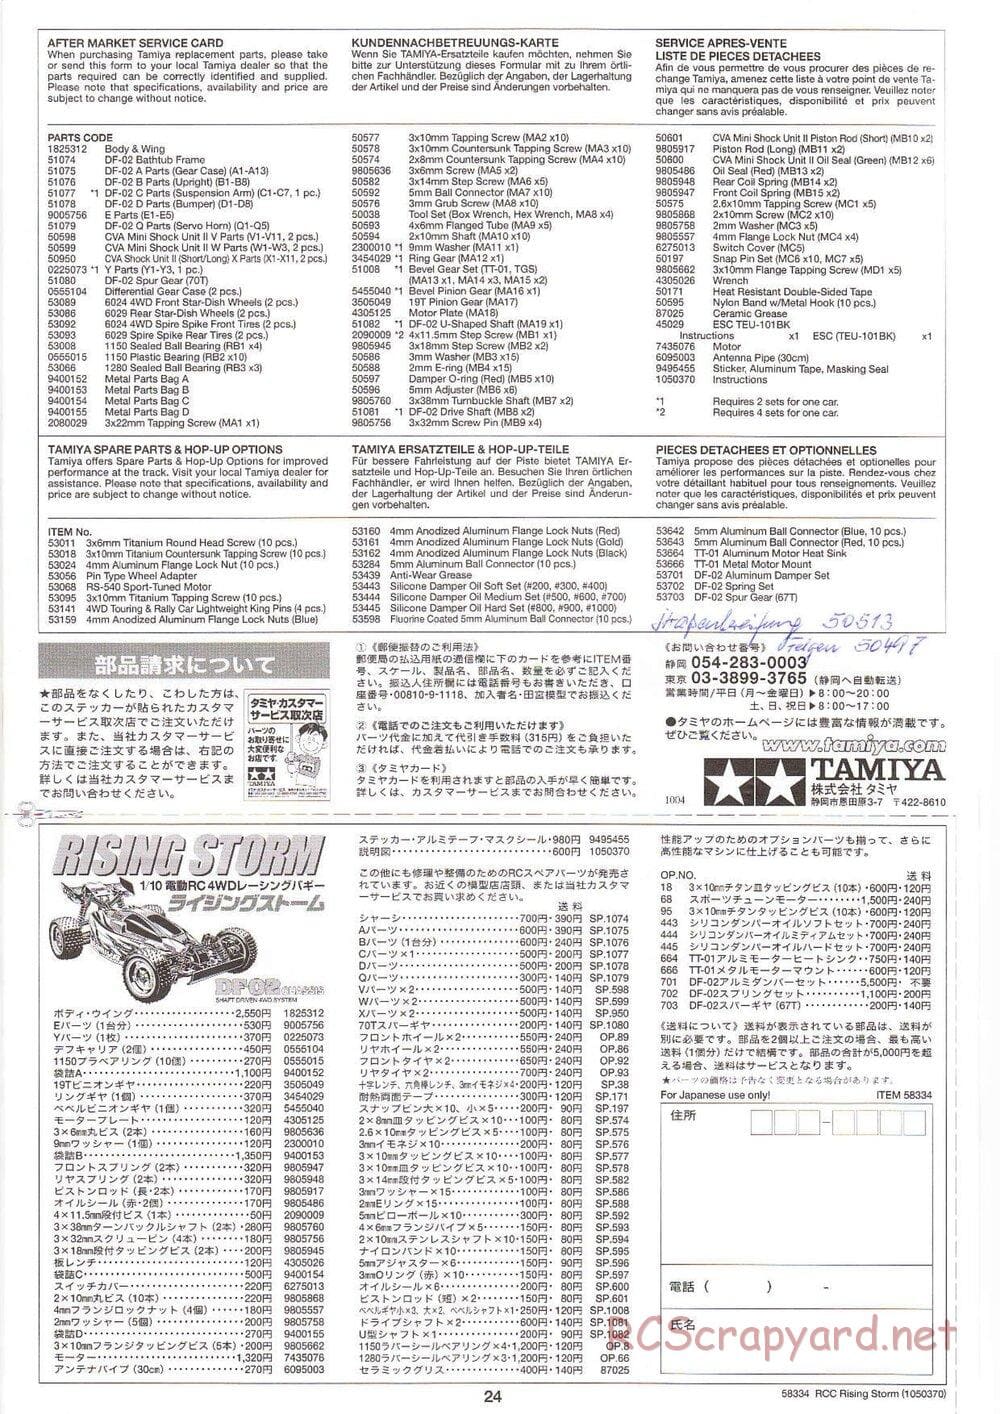 Tamiya - Rising Storm Chassis - Manual - Page 24